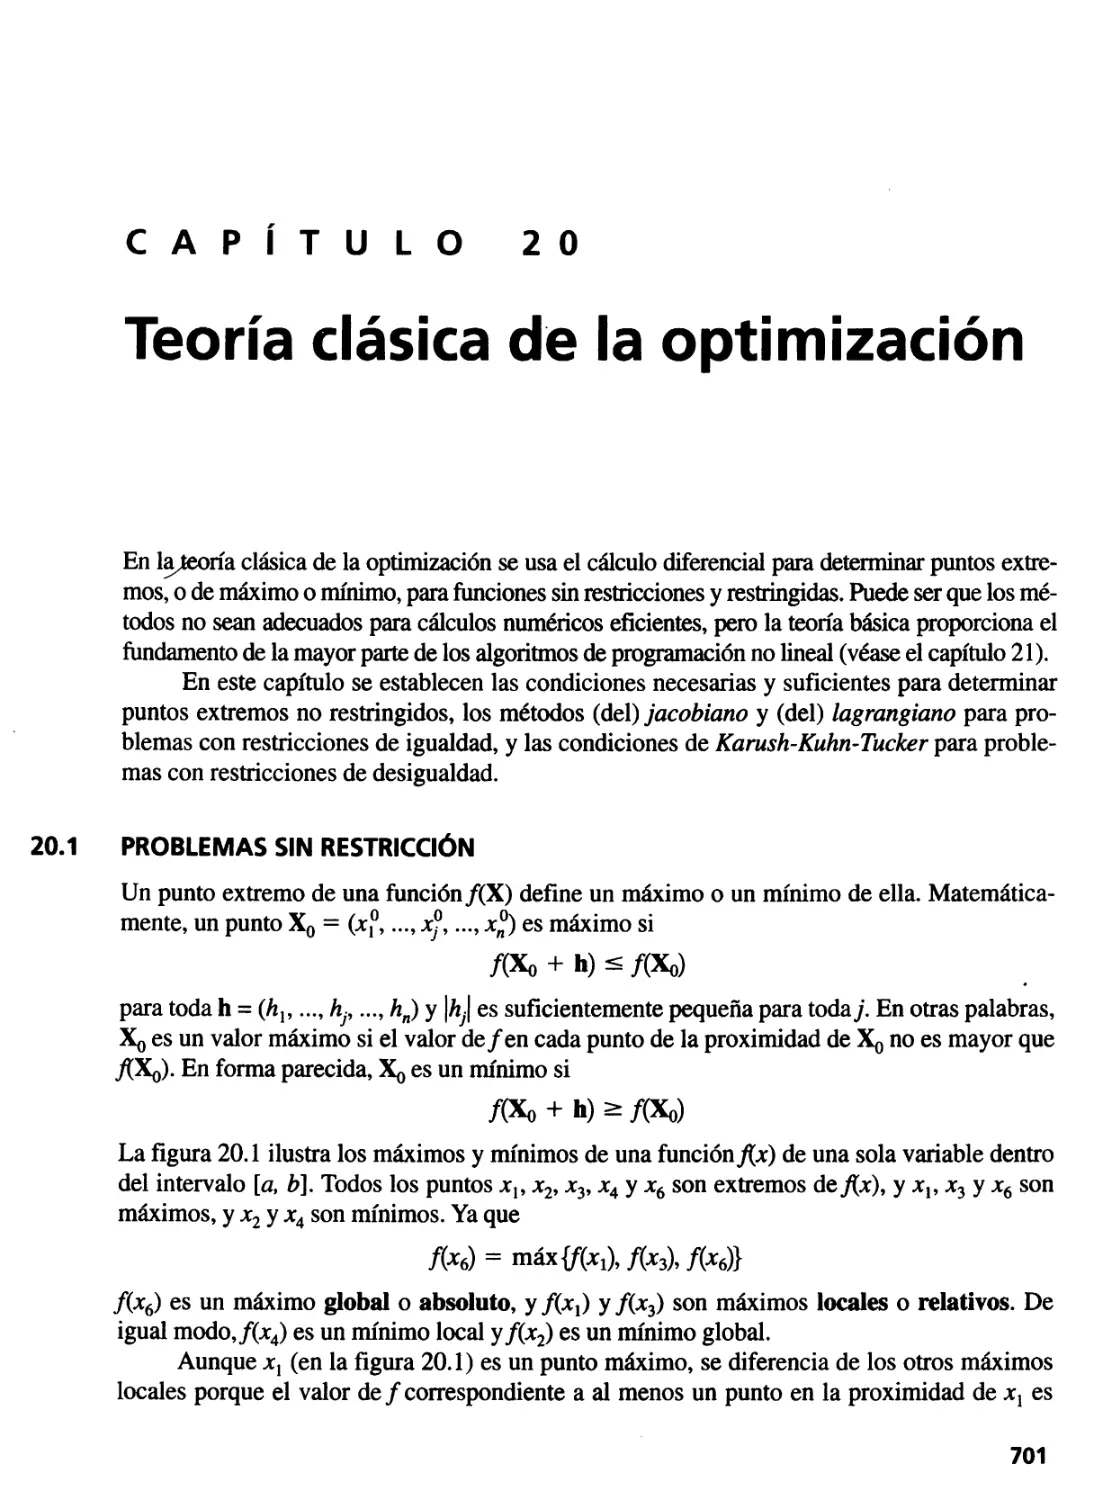 20. Teoría clásica de la optimización